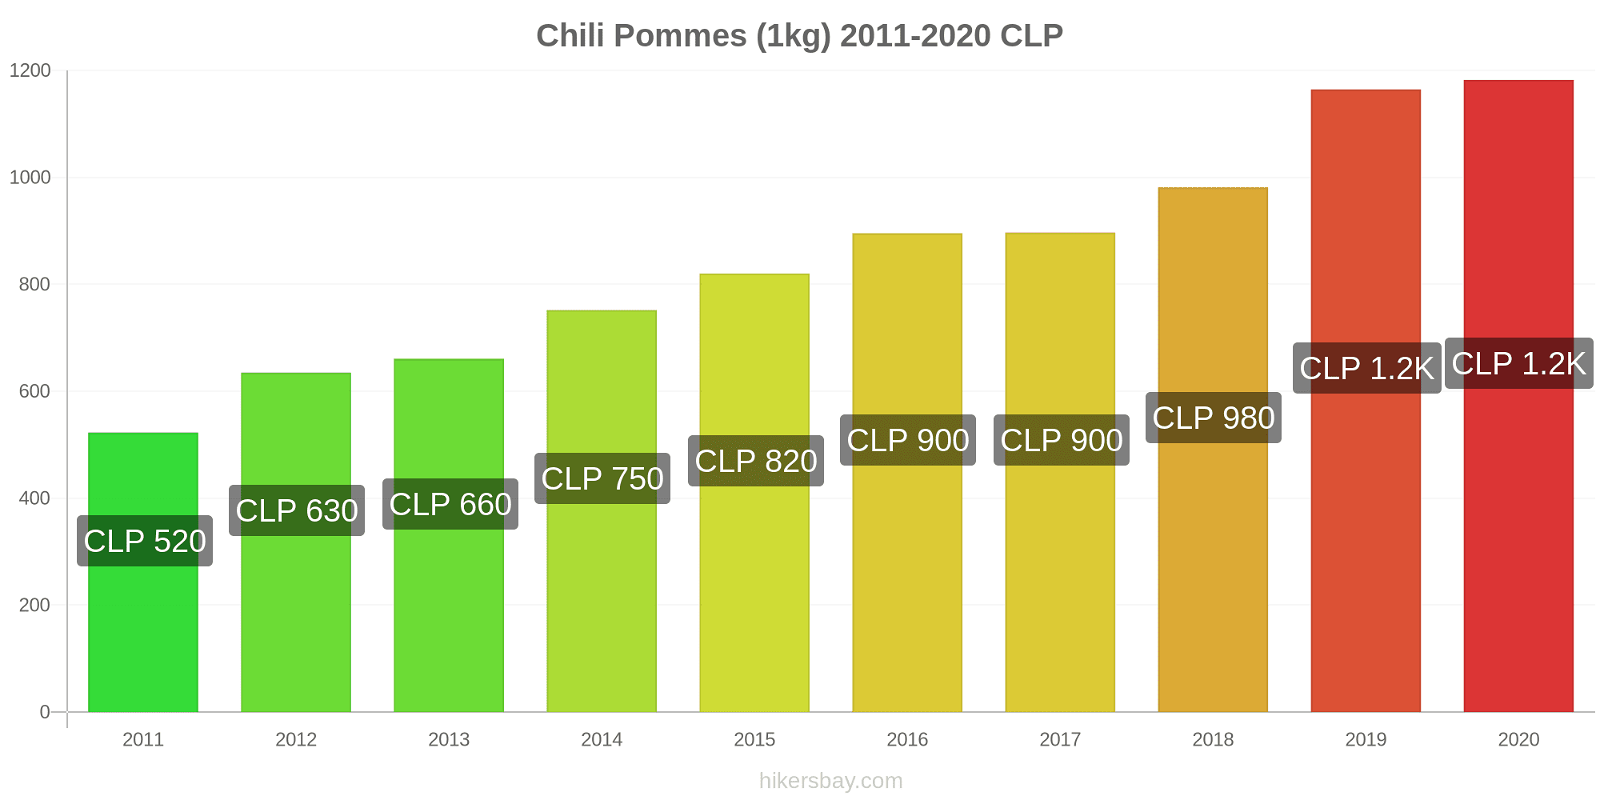 Chili changements de prix Pommes (1kg) hikersbay.com